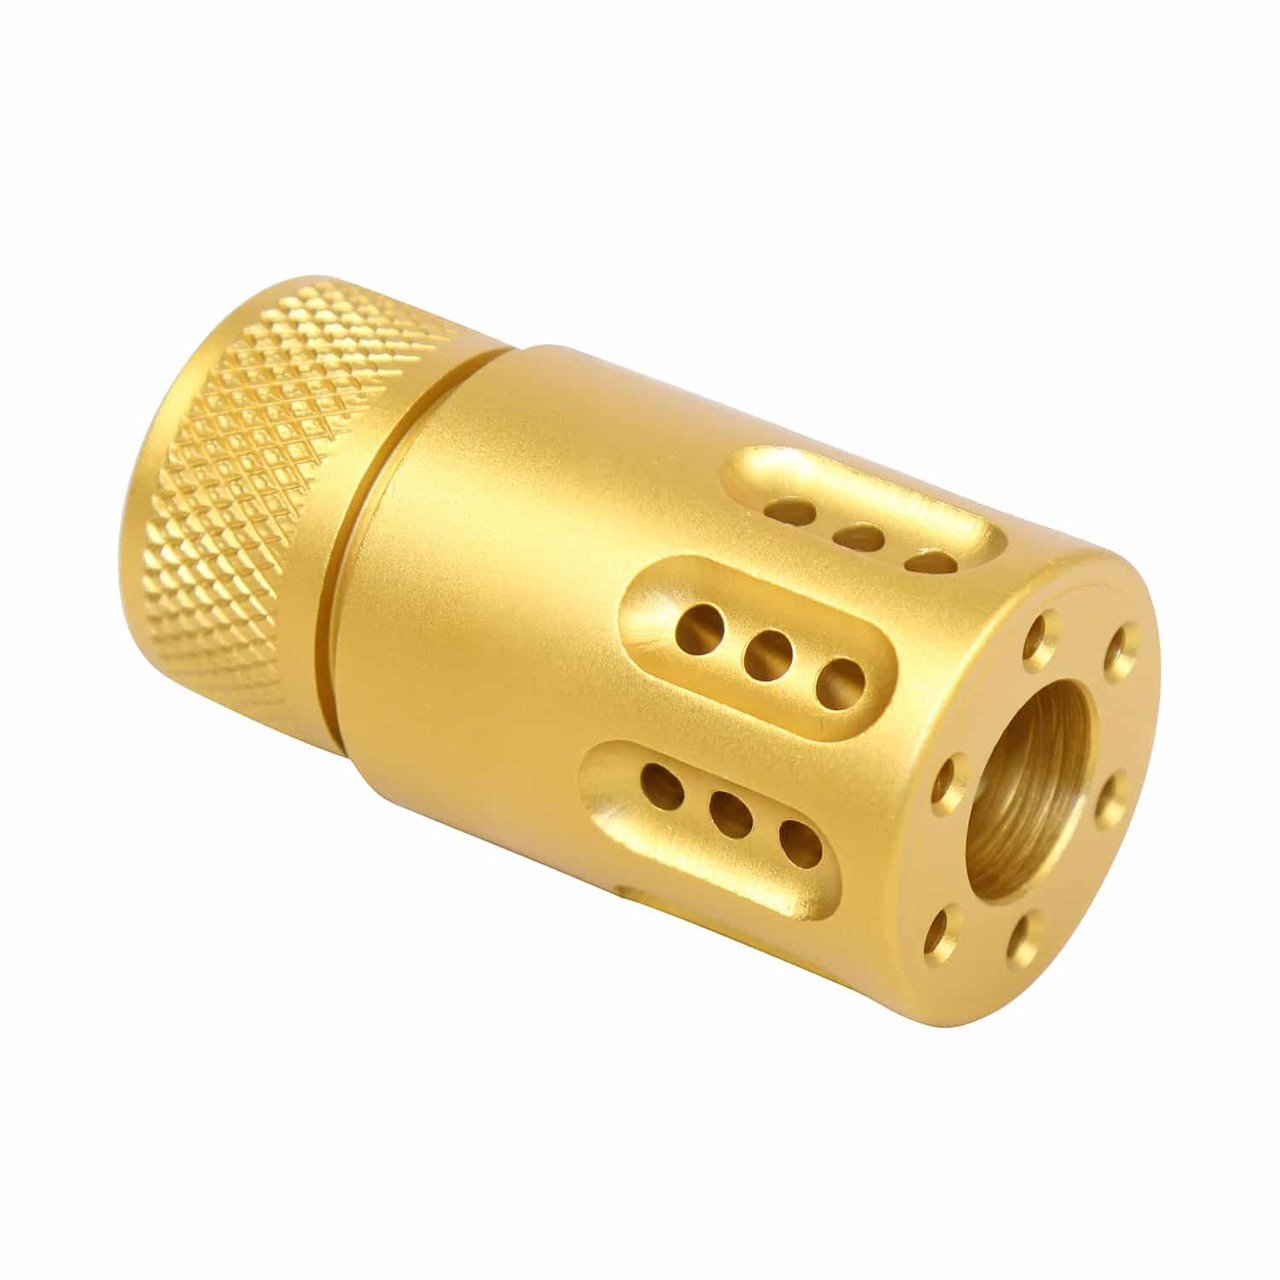 Guntec USA 1326-MB-P-MINI-GOLD Mini Slip Over Barrel Shroud With Multi Port Muzzle Brake (Anodized Gold)